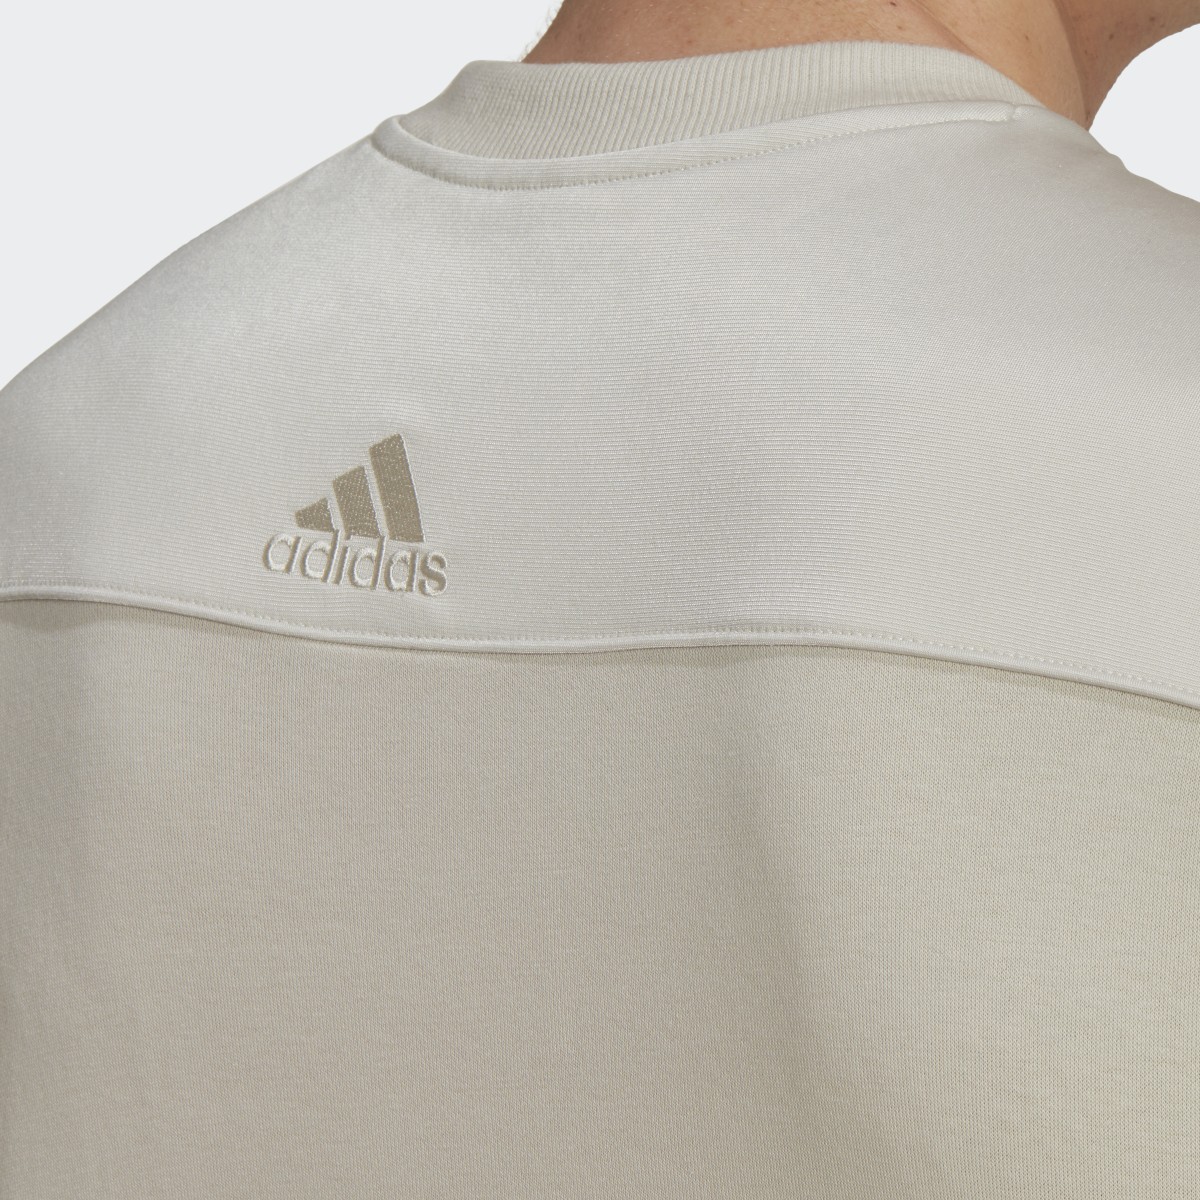 Adidas Essentials Brand Love French Terry Sweatshirt – Genderneutral. 6